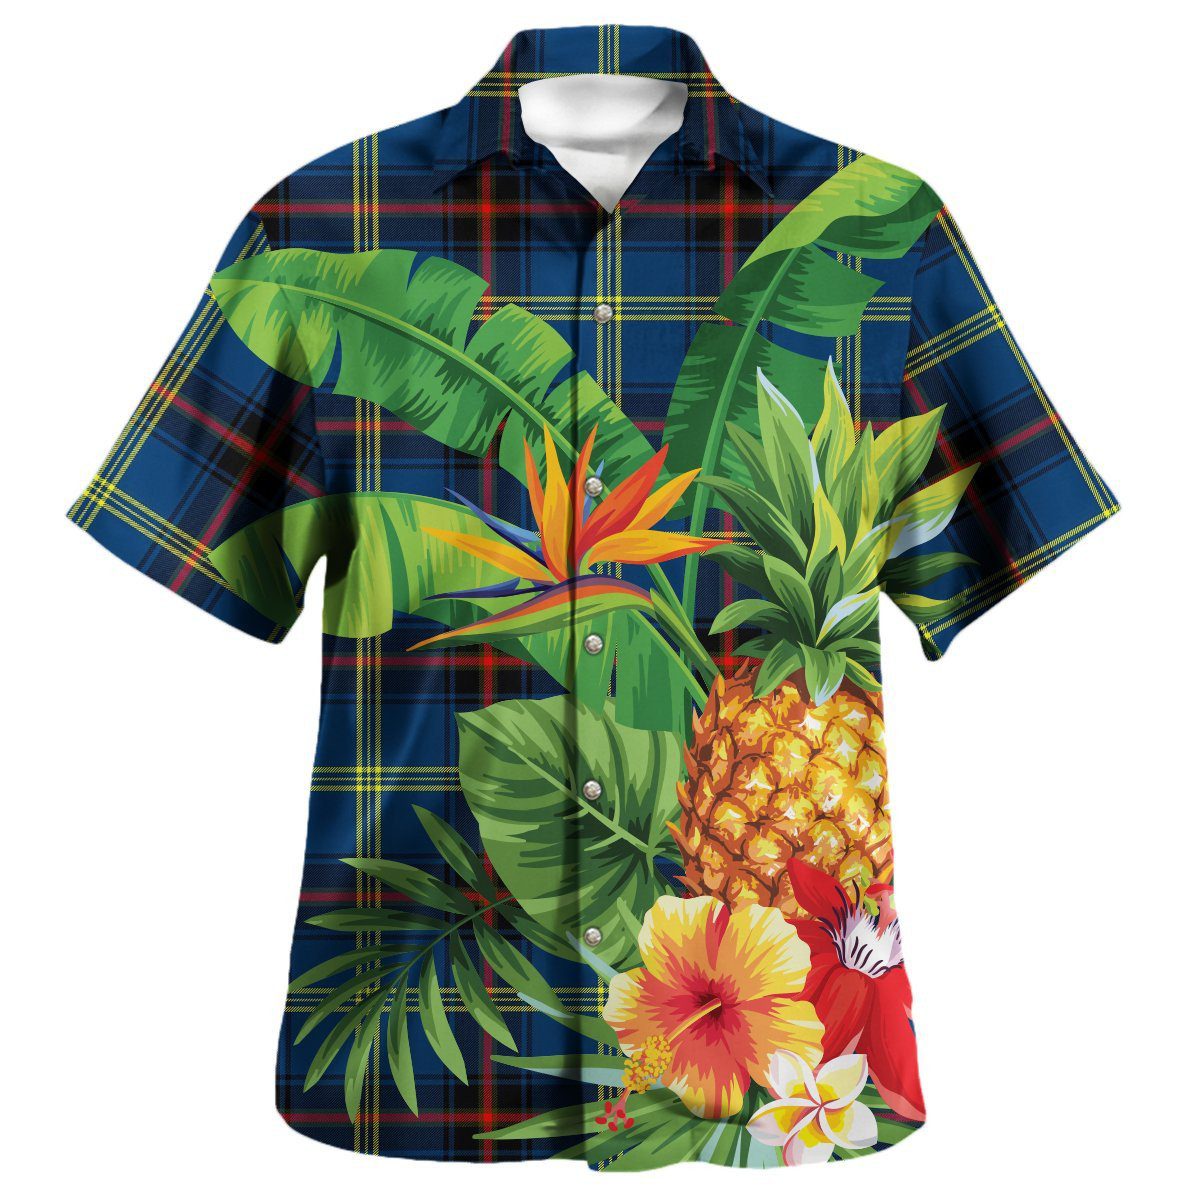 Grewar Tartan Aloha Shirt version 2